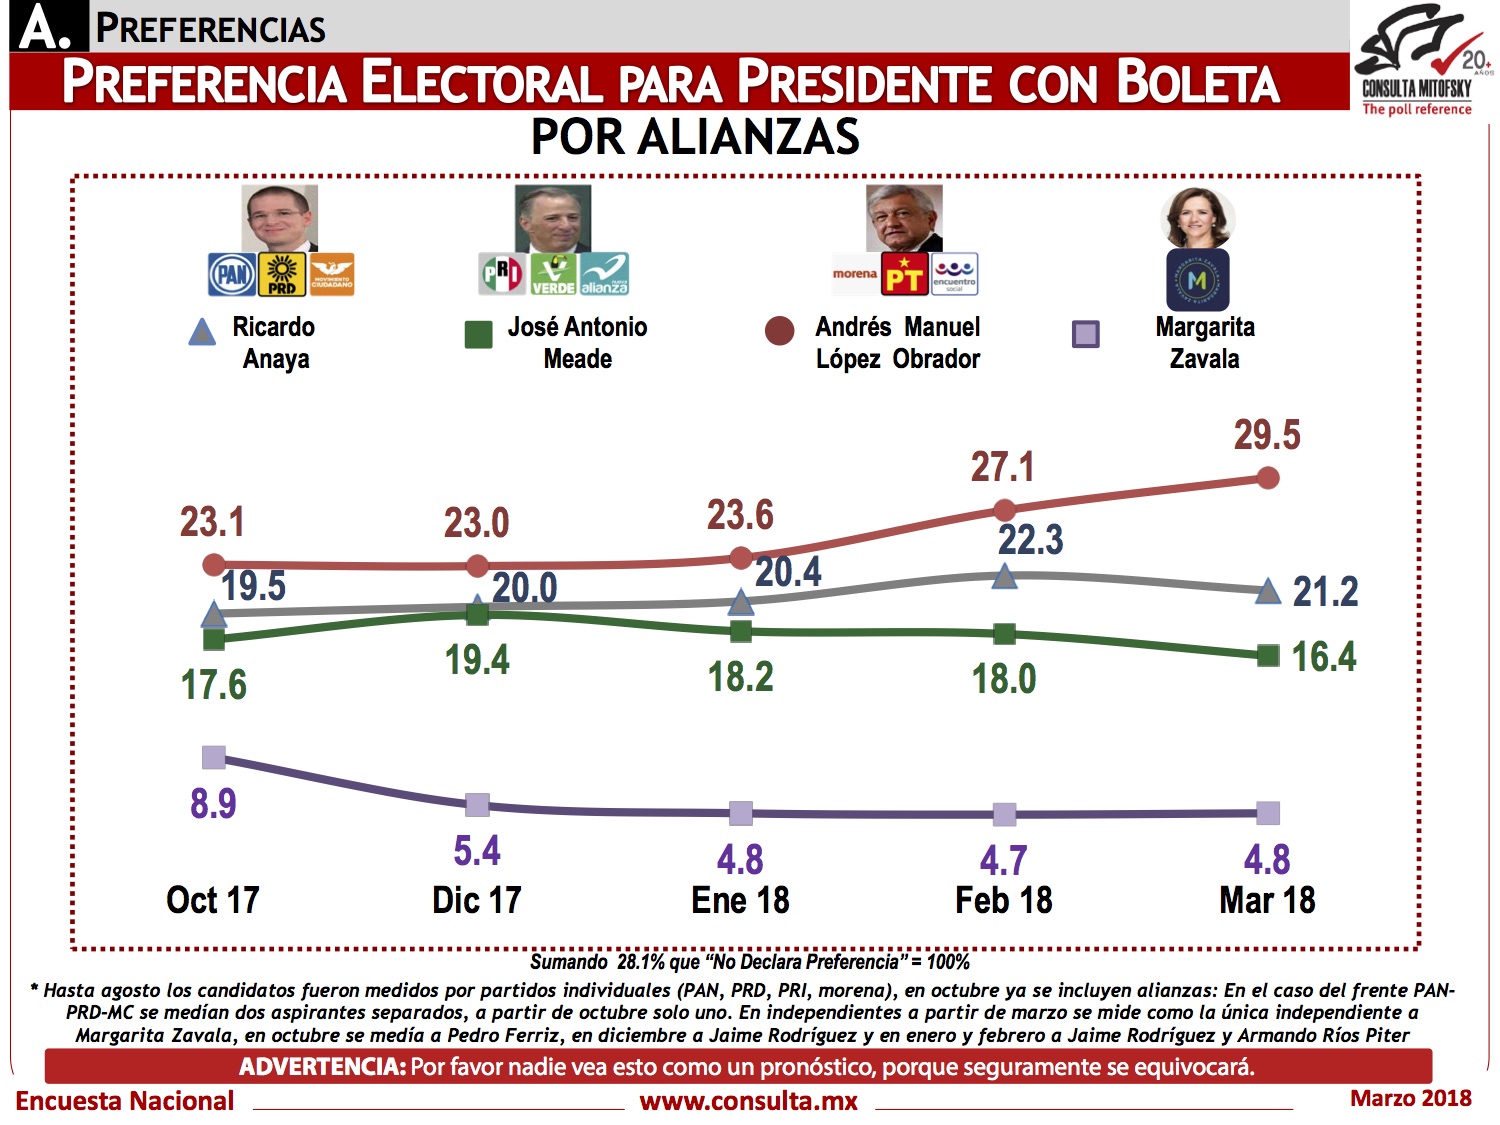 Encuesta de preferencias electorales a la Presidencia de México de Consulta Mitofksy, publicada el 23 de marzo de 2018.